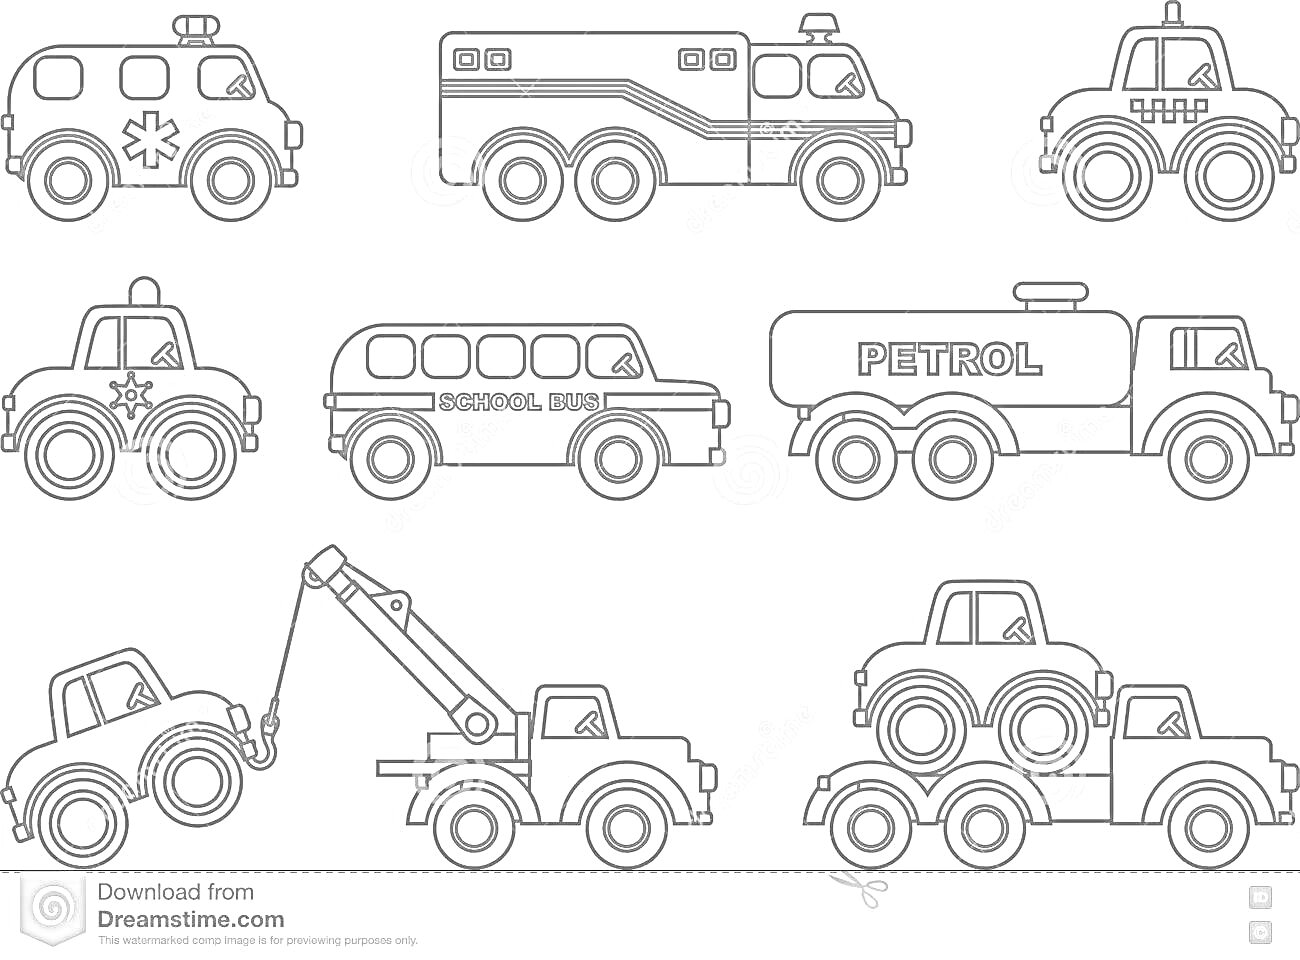 Раскраска Специальный транспорт для детей: скорая помощь, пожарная машина, полицейская машина, машина медицинской помощи, школьный автобус, бензовоз, эвакуатор, автовоз